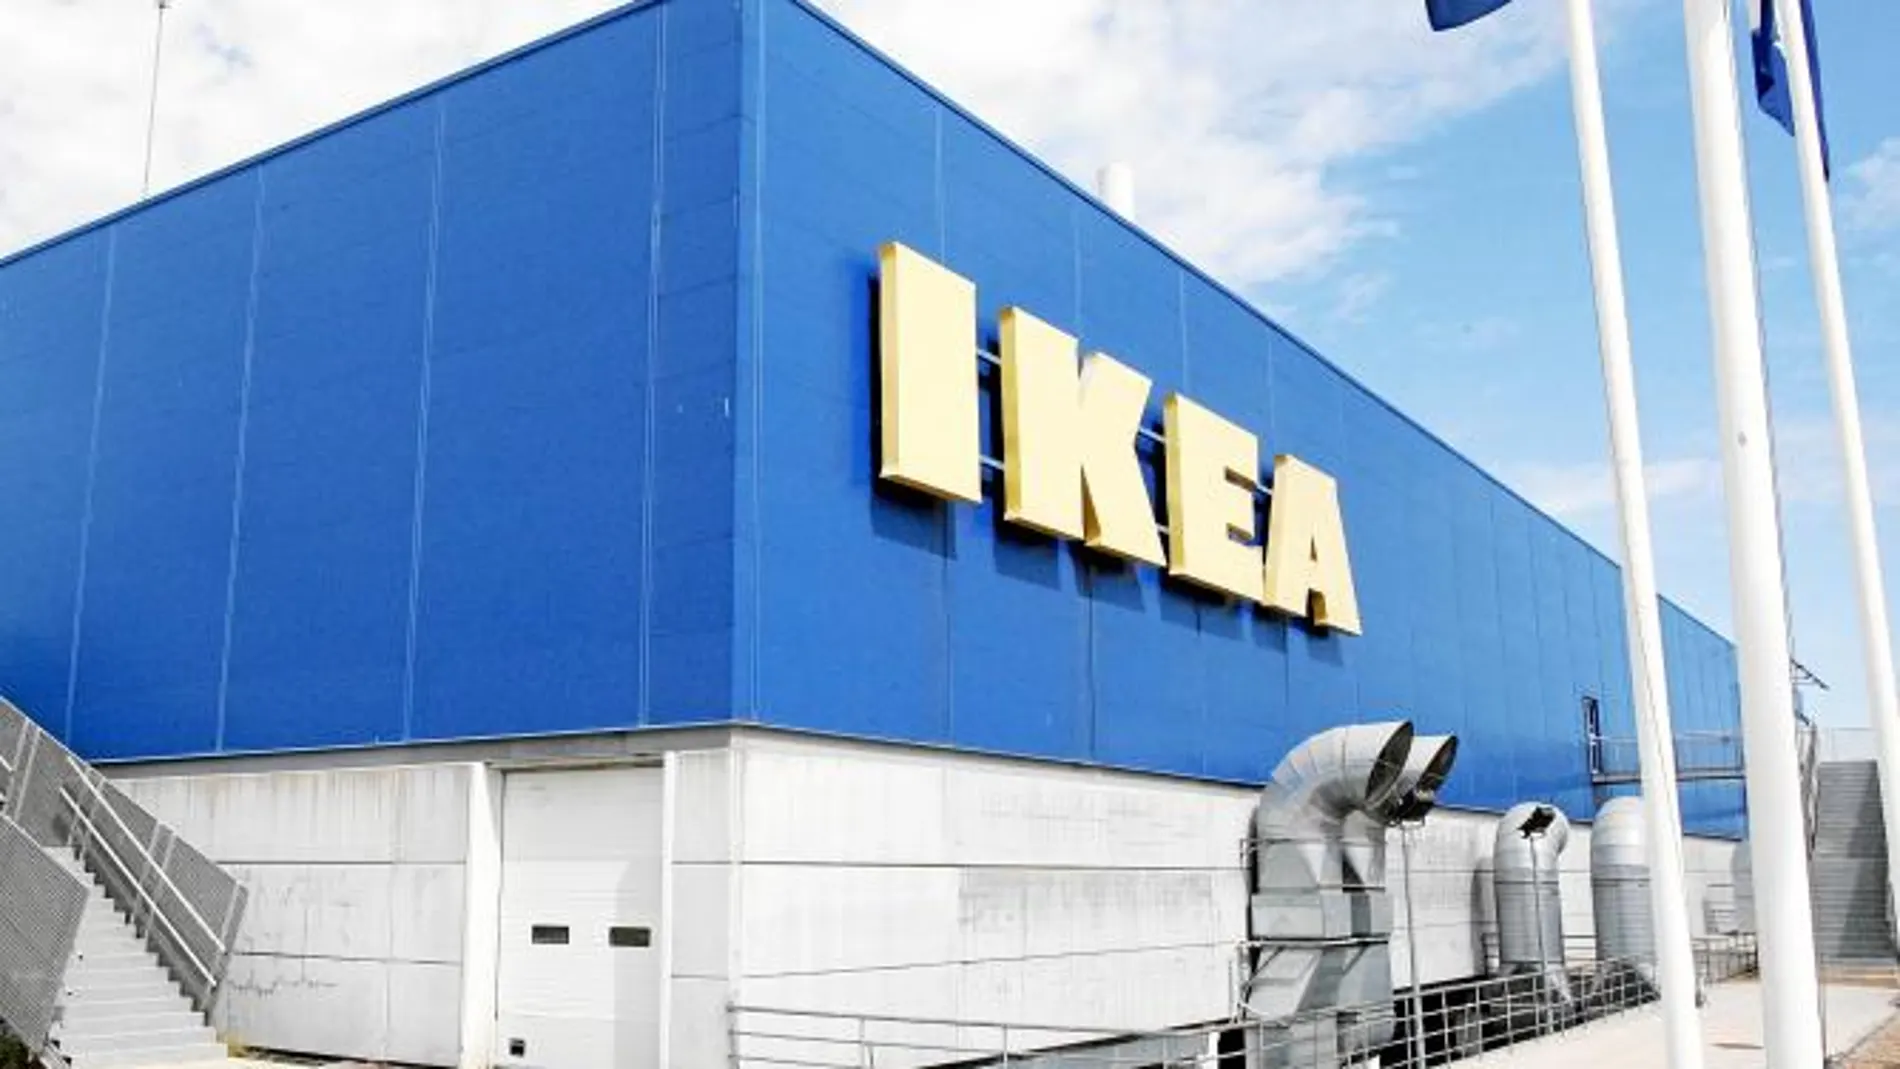 Las relaciones con IKEA son «fluidas», según el Ayuntamiento